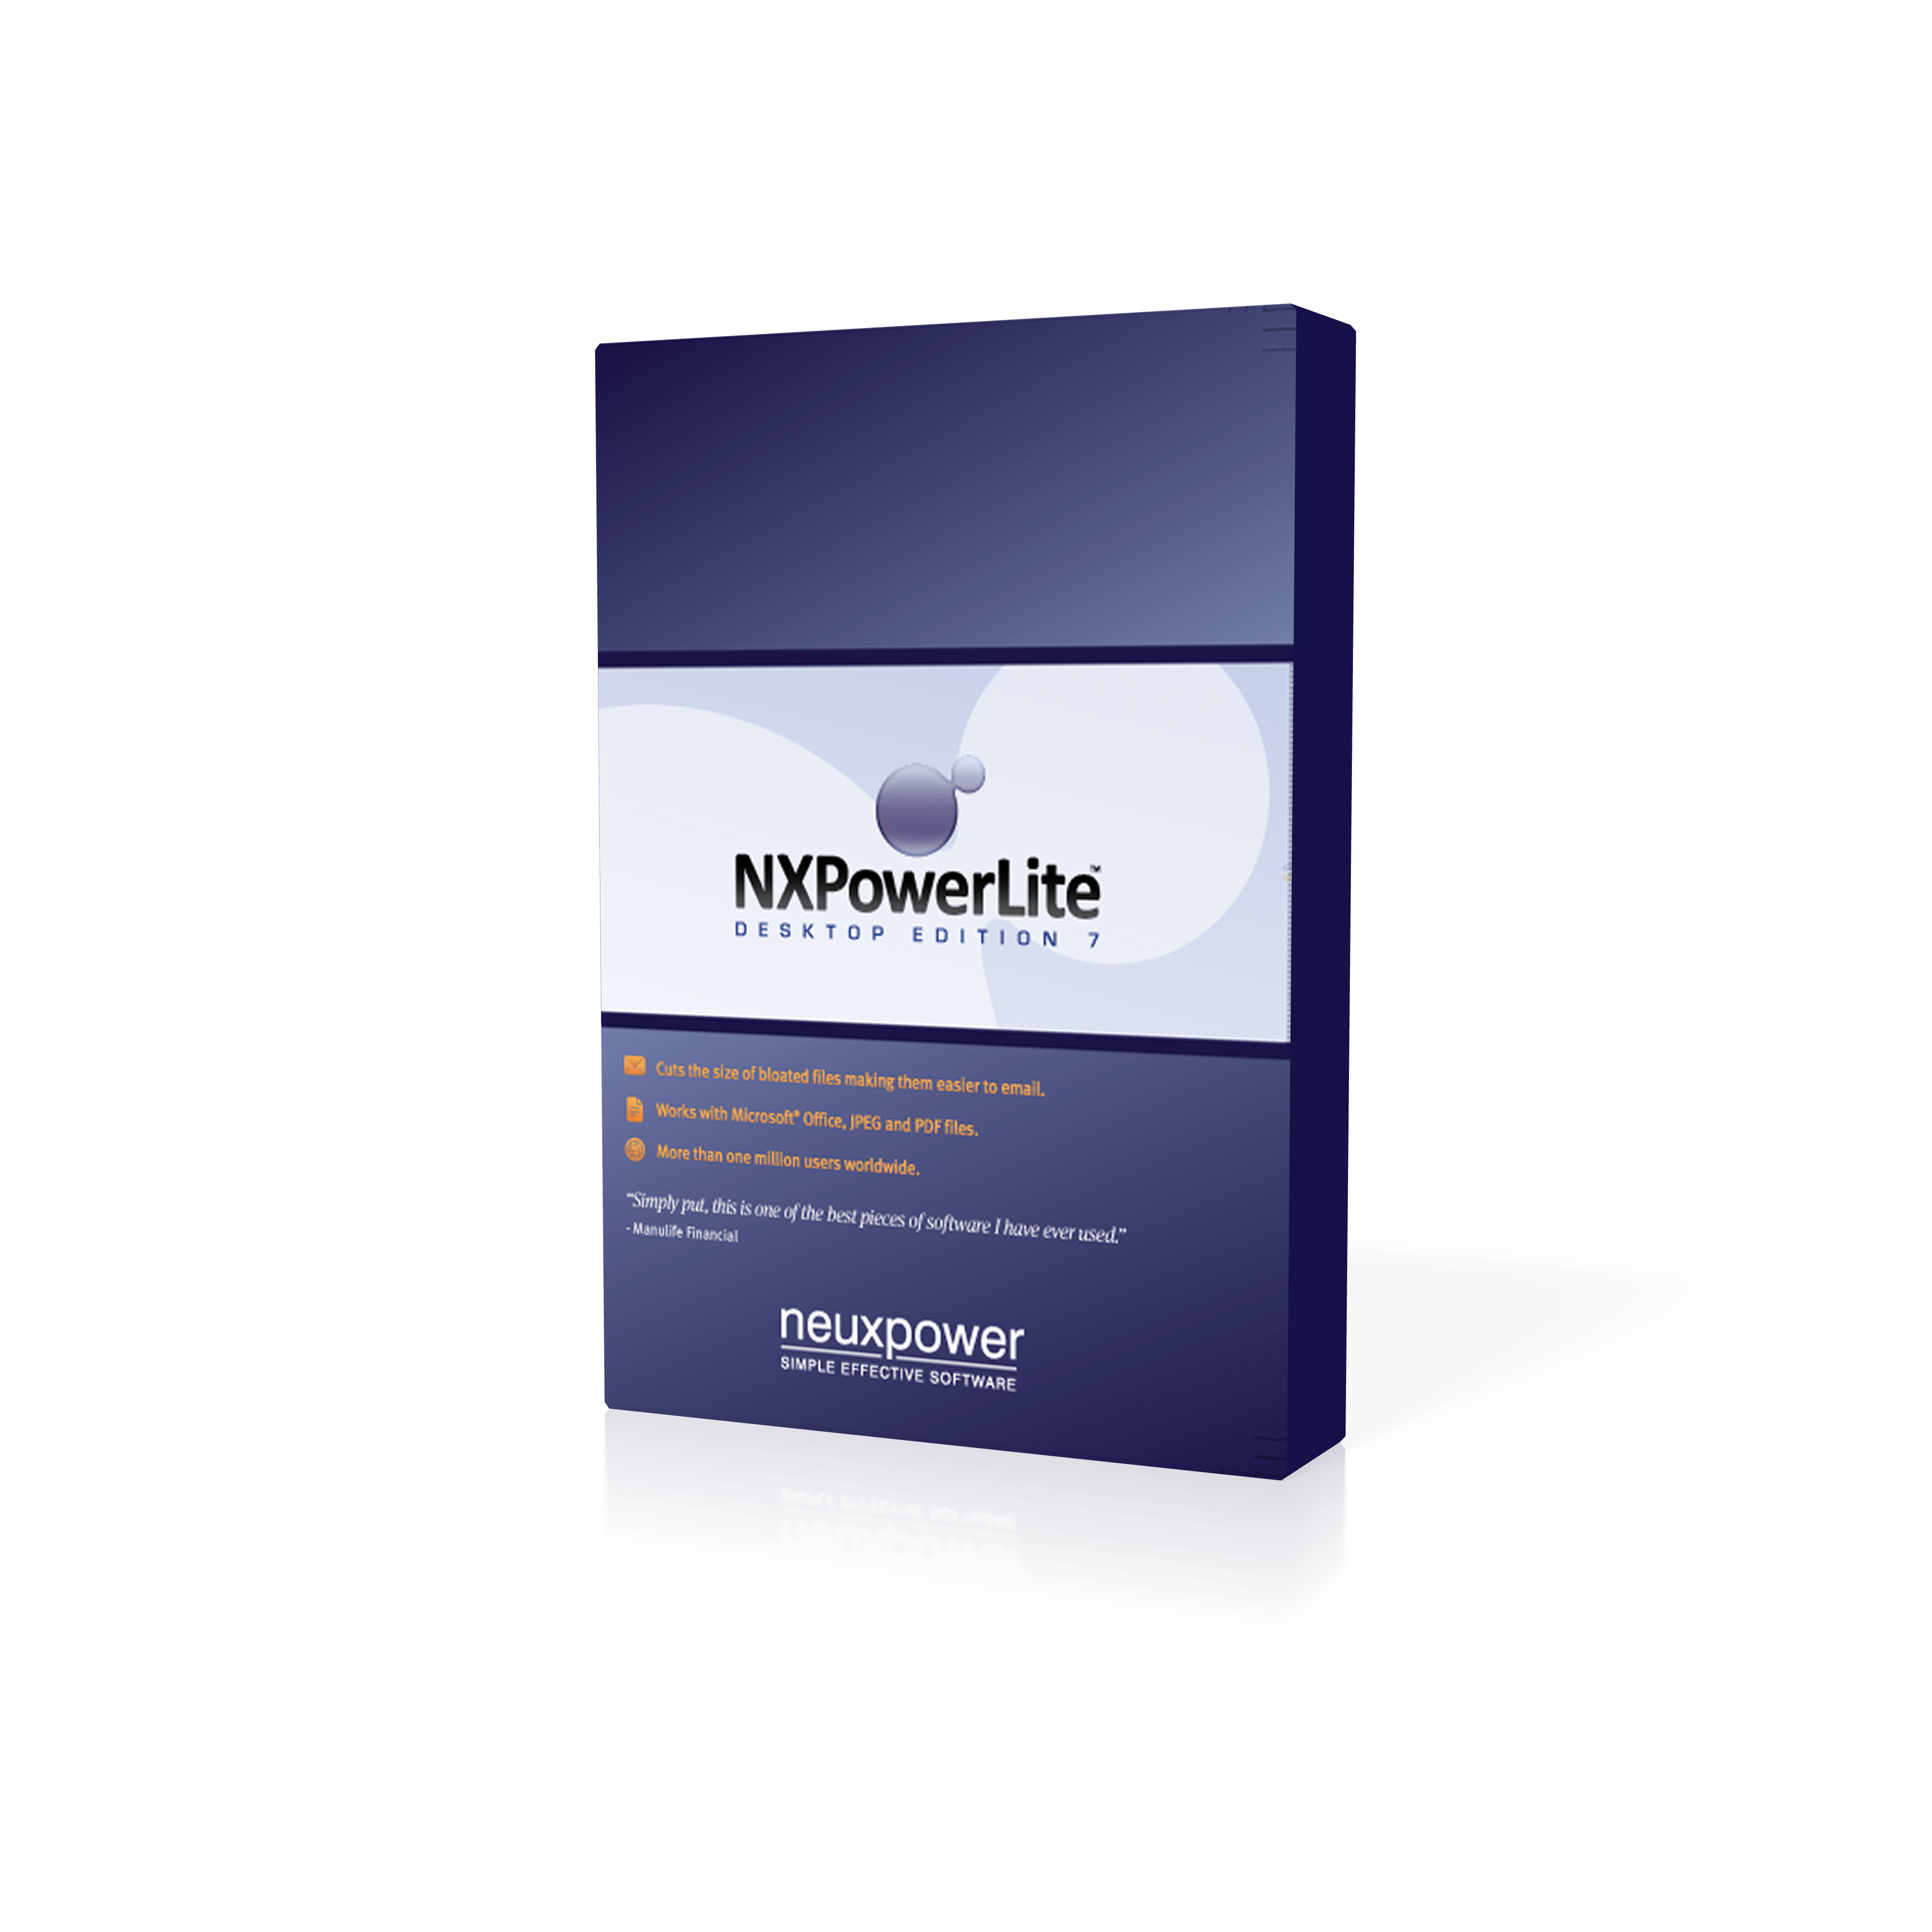 NXPowerLite Desktop 10.0.1 download the new version